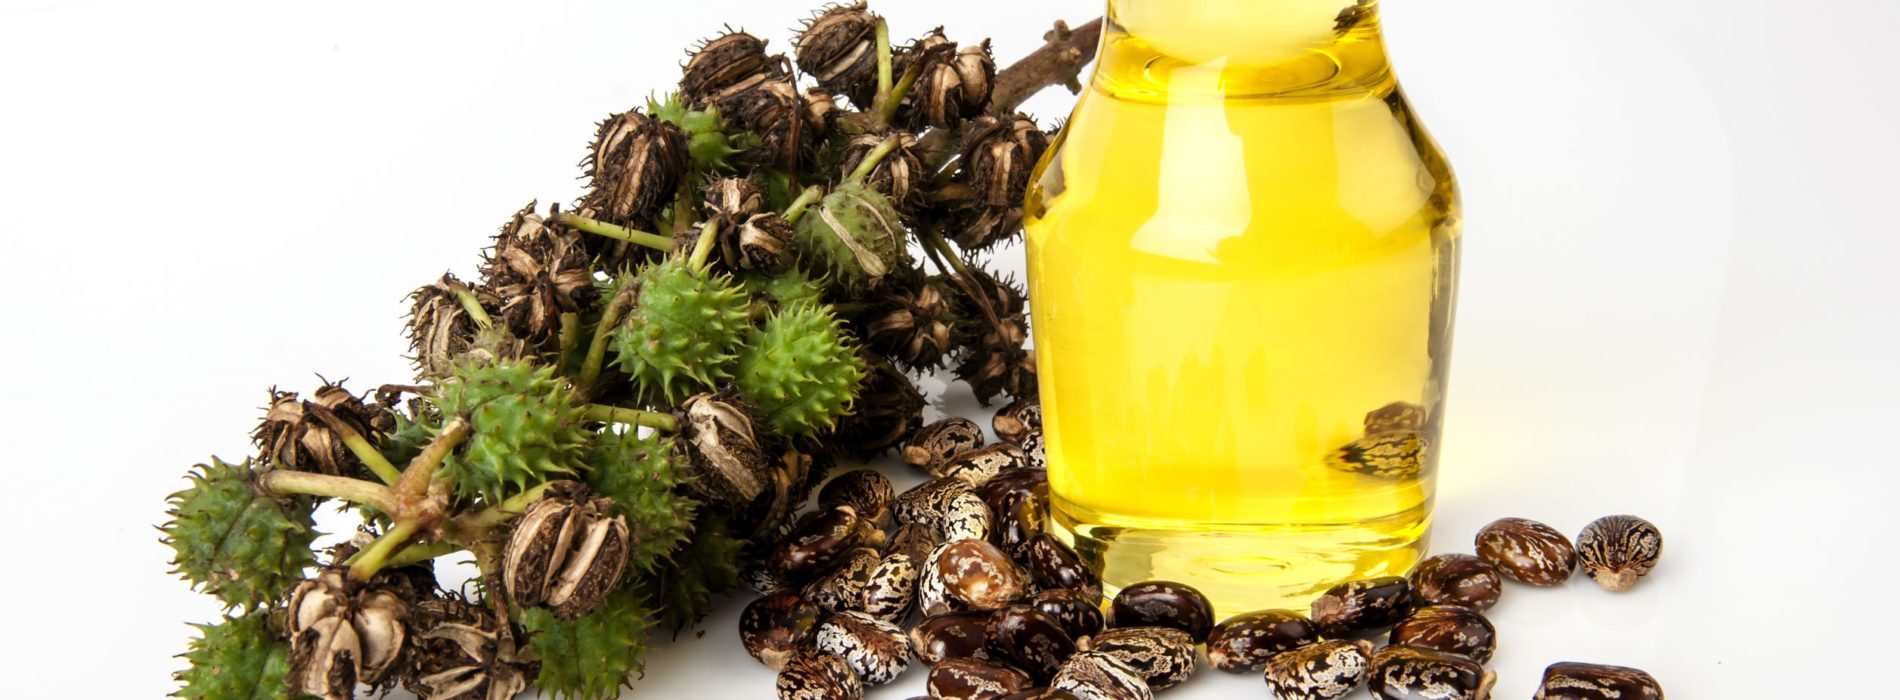 Olej rycynowy – Właściwości oraz zastosowanie oleju rycynowego